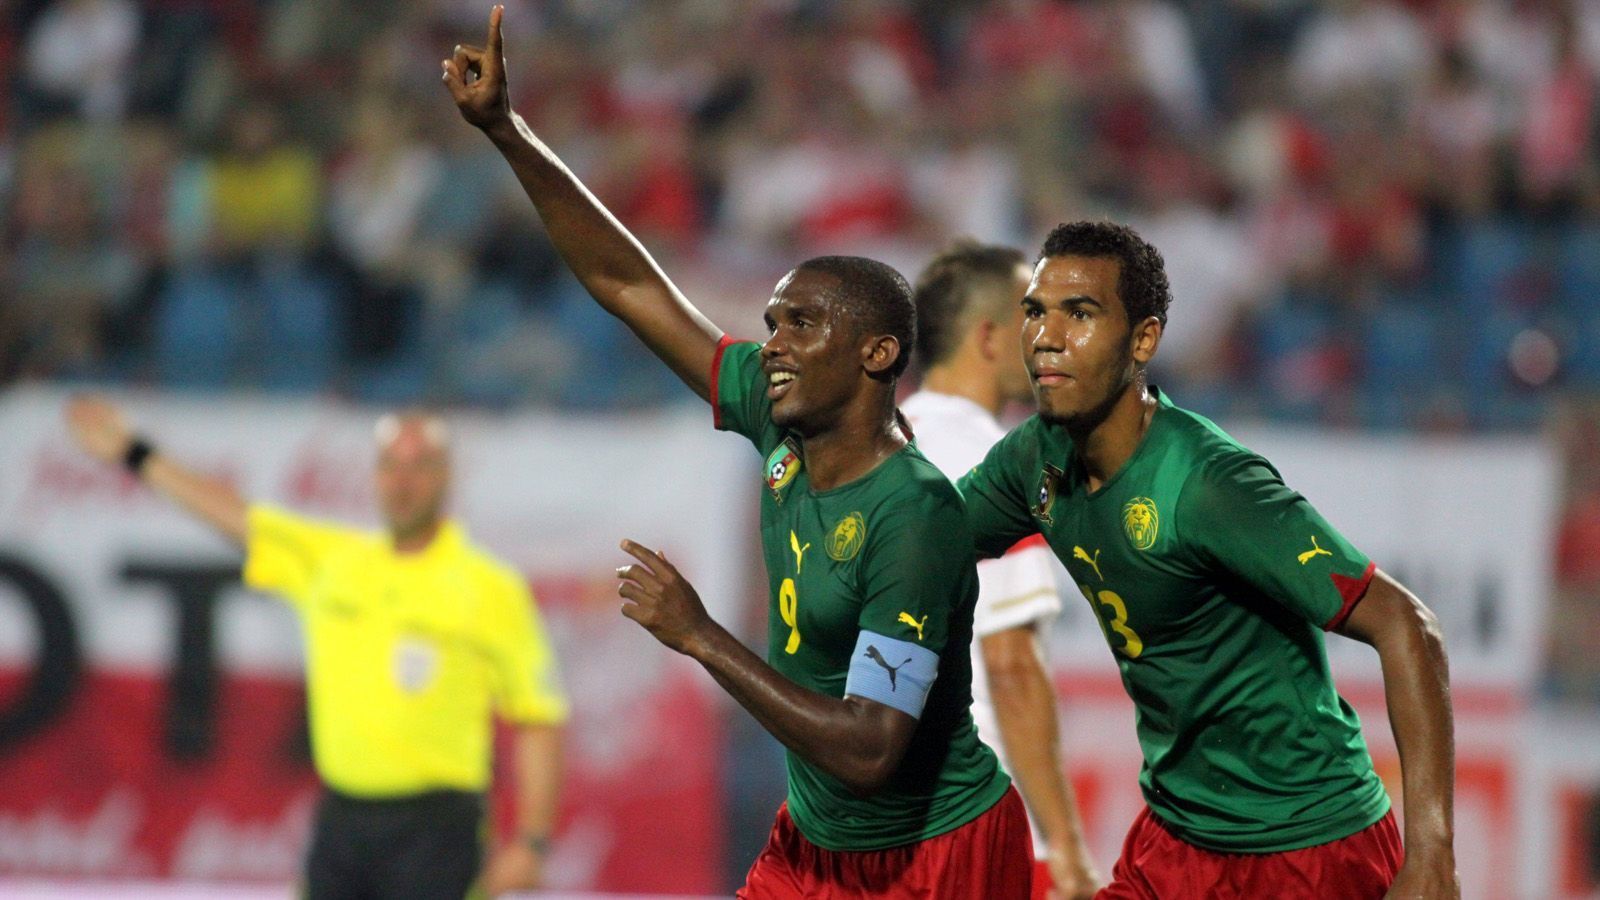 
                <strong>Nationalspieler von Kamerun an der Seite von Eto'o</strong><br>
                Choupo-Moting durchlief zwar mehrere deutsche U-Nationalmannschaften bis hin zur U21, spielte als A-Nationalspieler allerdings für Kamerun – dem Land seines Vaters. Bei den Weltmeisterschaften 2010 und 2014 stand er auf dem Platz und spielte an der Seite des Weltstars Samuel Eto'o. Bislang absolvierte er 68 Länderspiele für Kamerun.
              